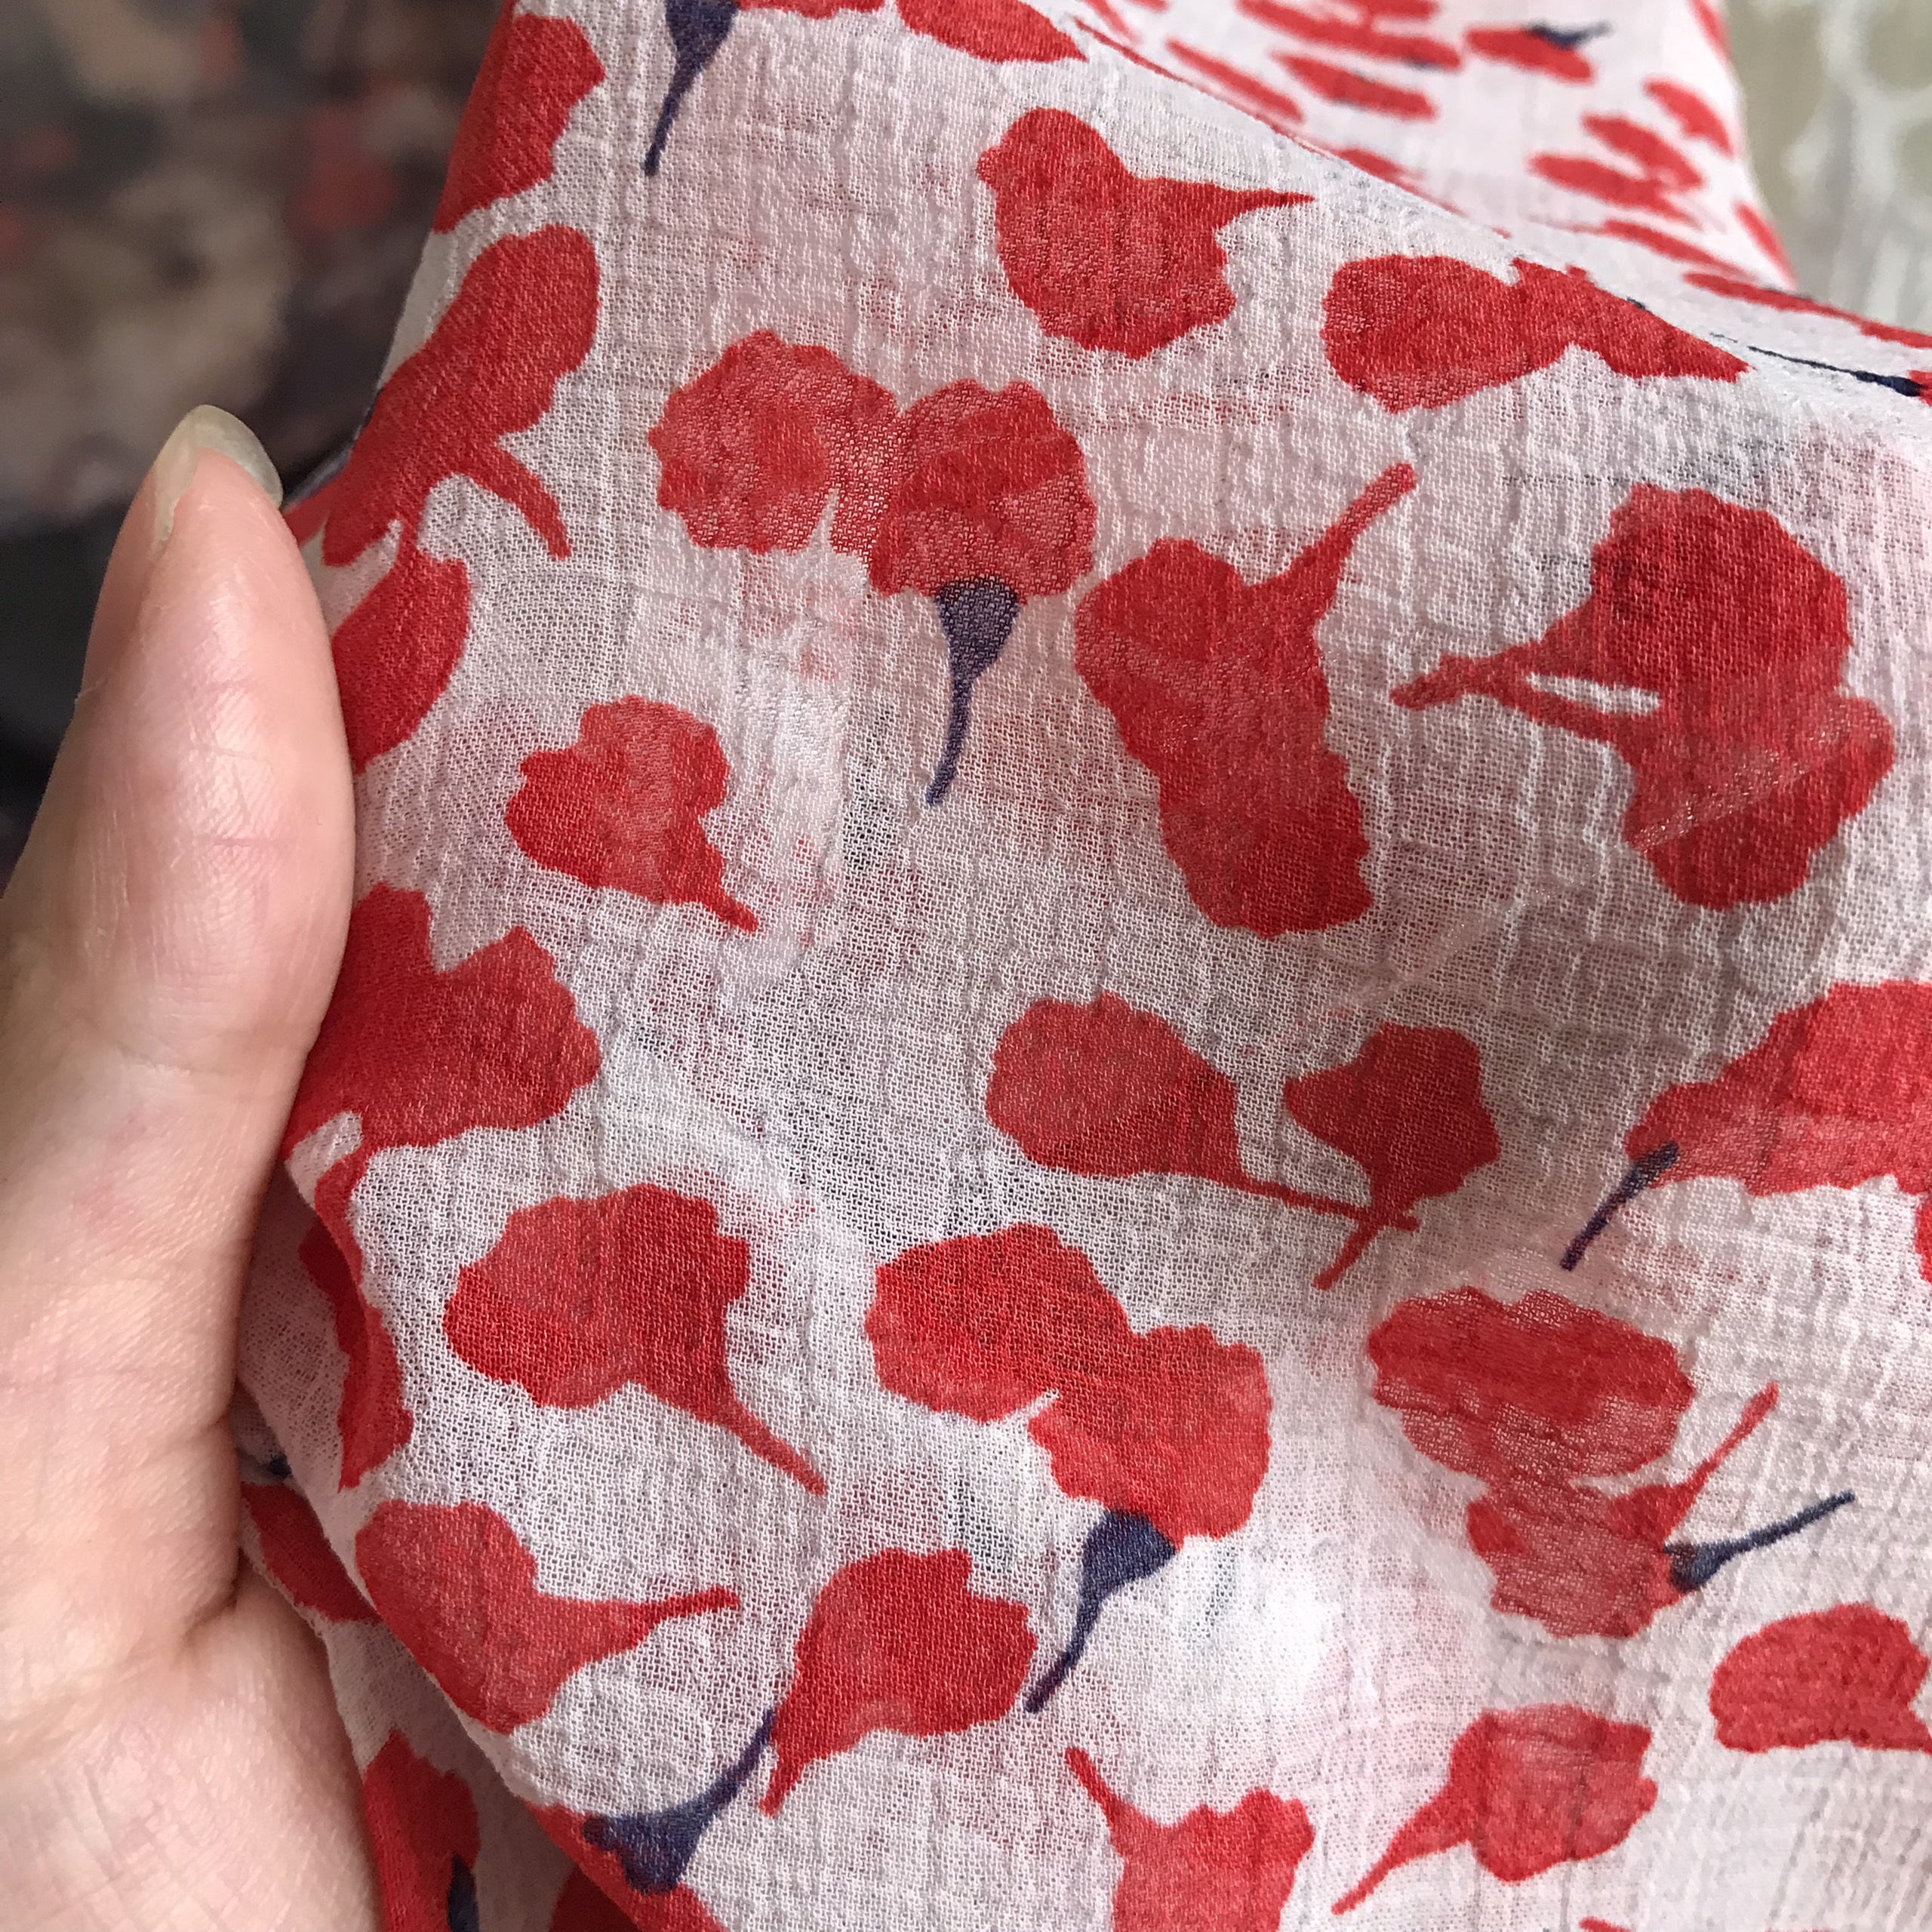 Vải Voan Gân Hoa Nhí Đỏ Khổ 1m5 - Mềm Mại, Co Giãn - May Áo Dài, Đầm, Váy, Áo Kiểu Cần Lót